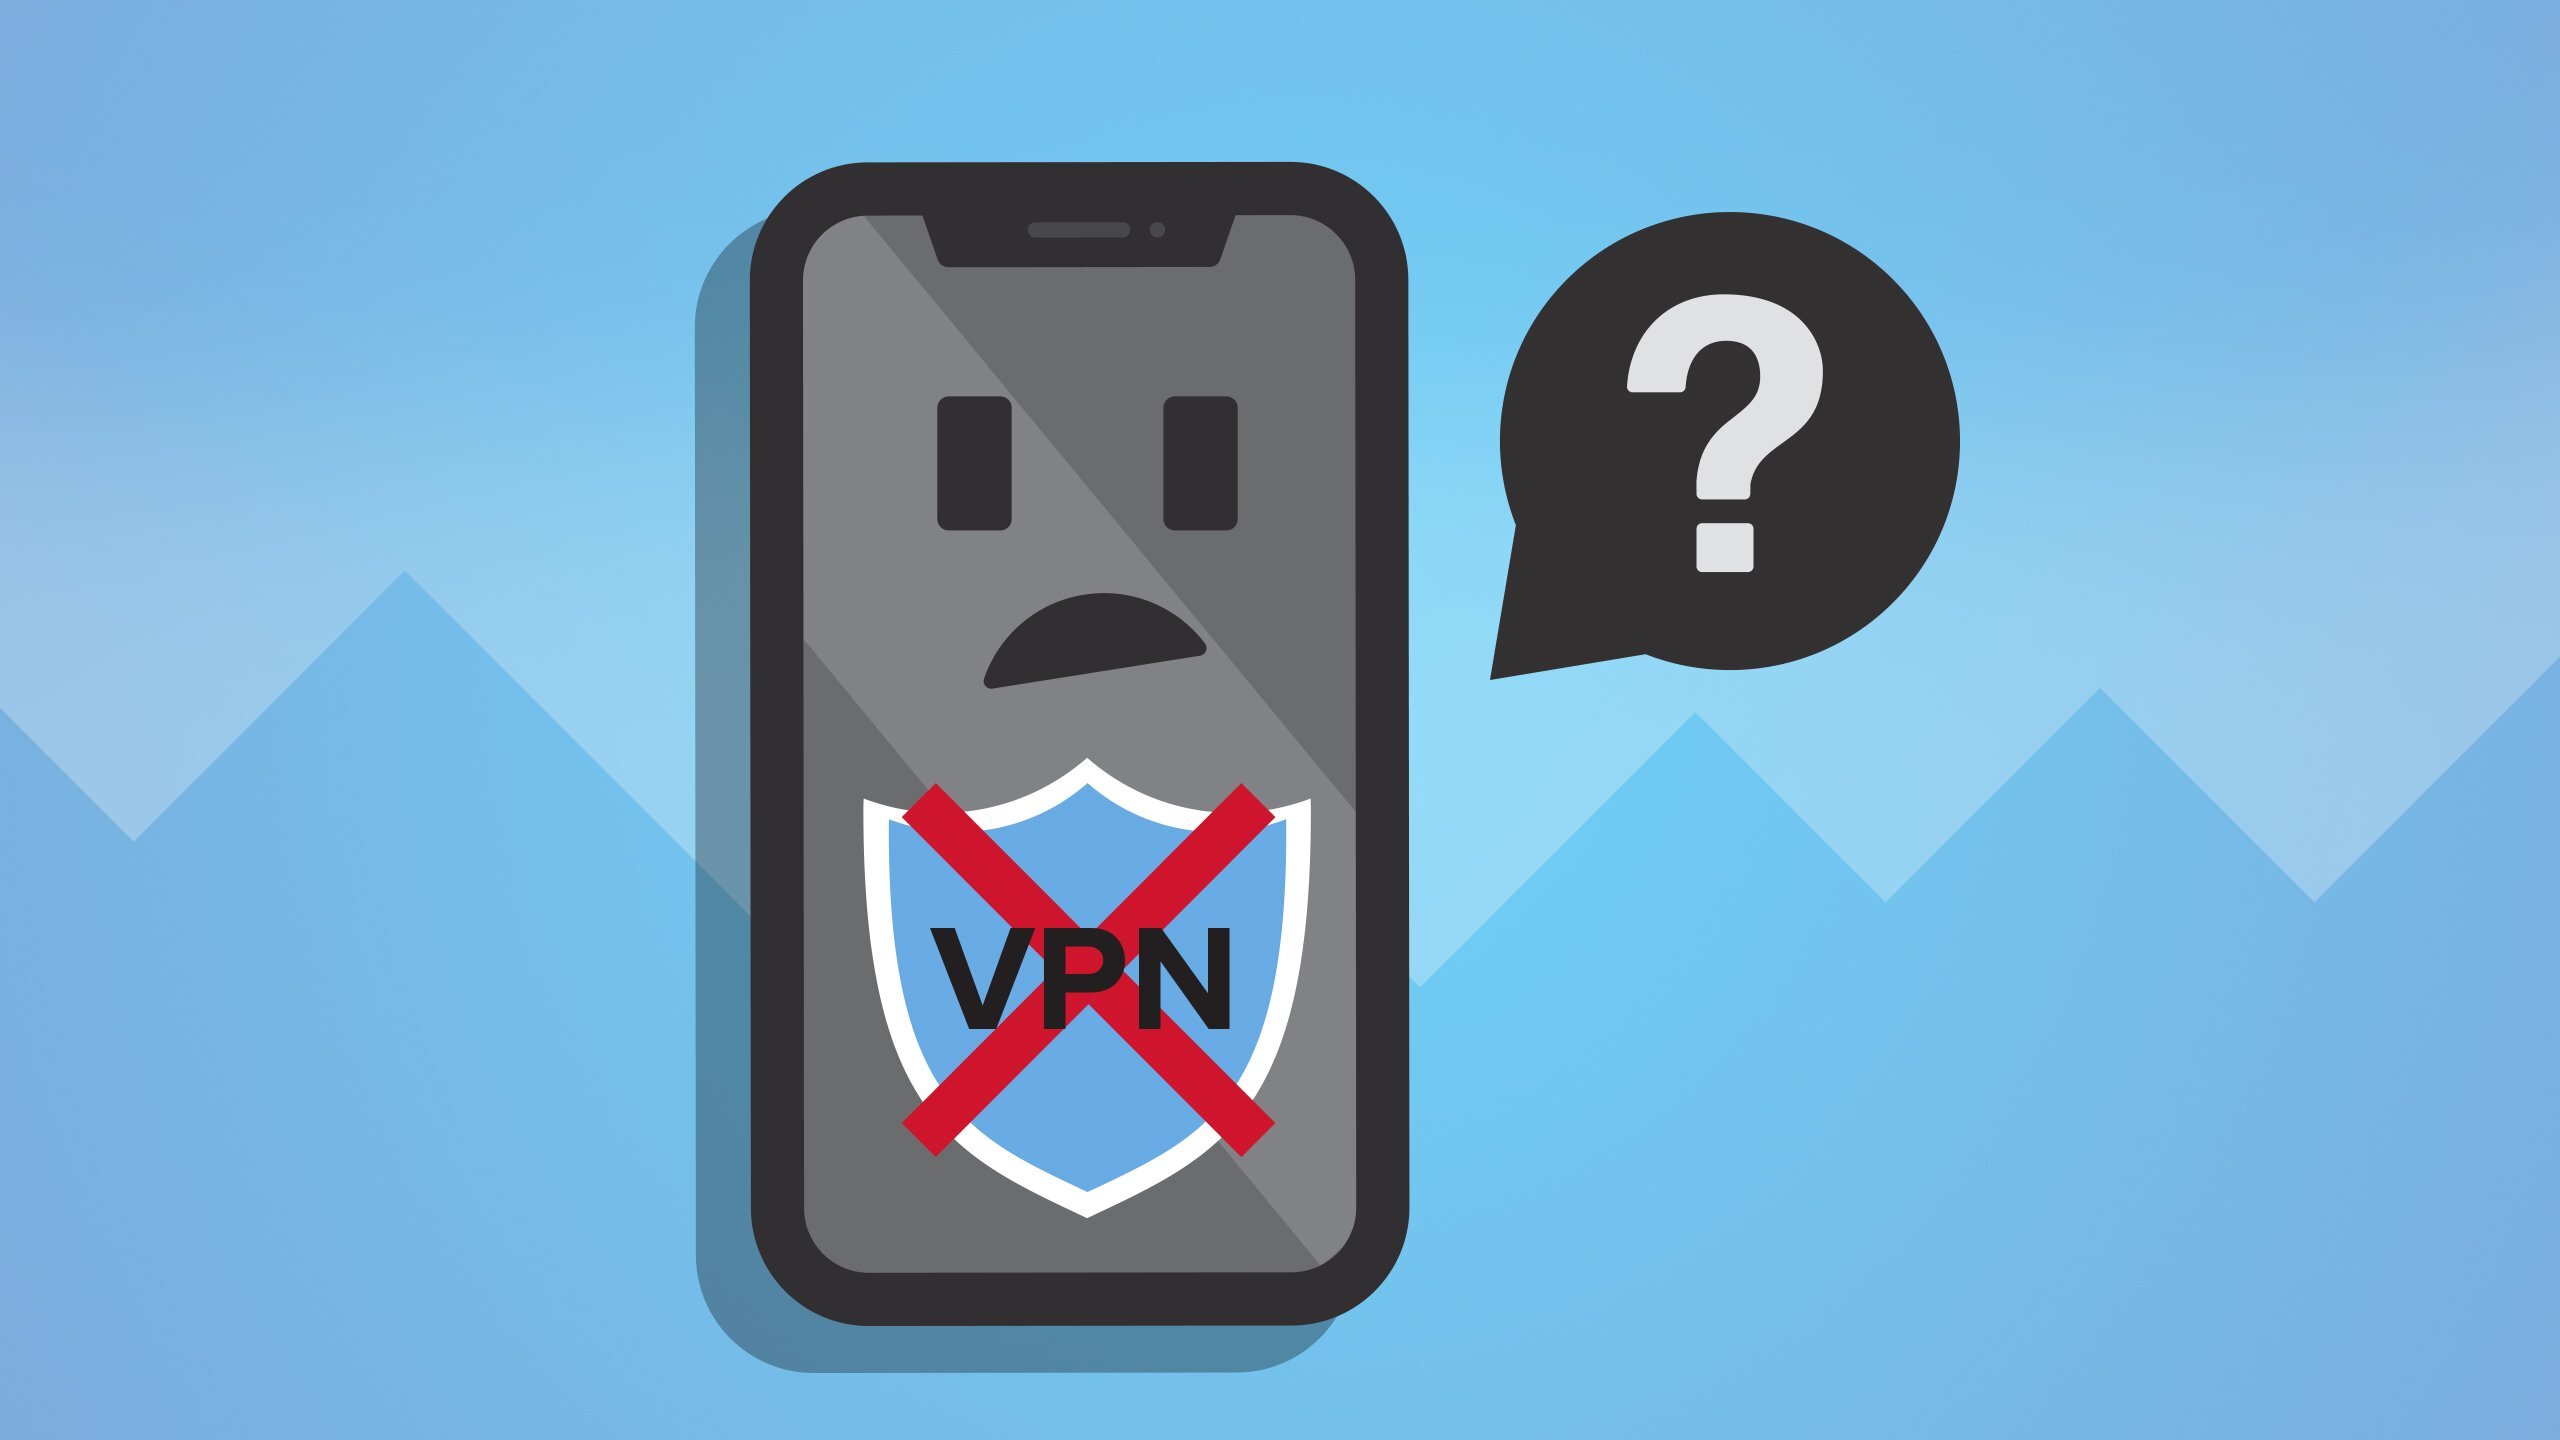           VPN